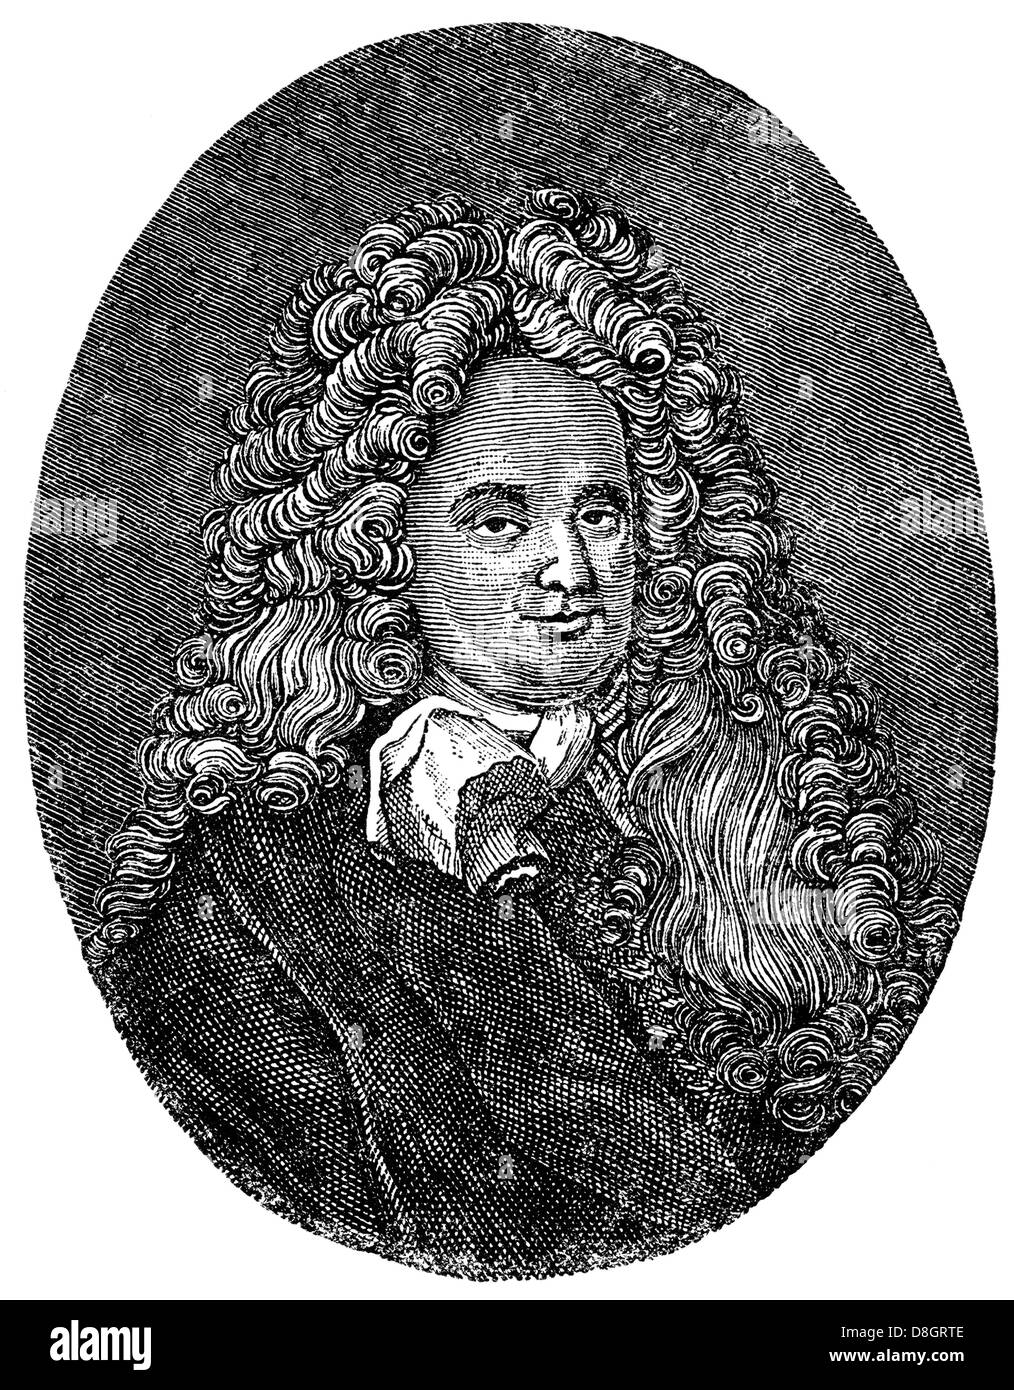 Eberhard von Danckelmann, 1643 - 1722, un officiel allemand, qui a servi comme Premier Ministre de Brandebourg-prusse, 18e siècle Banque D'Images